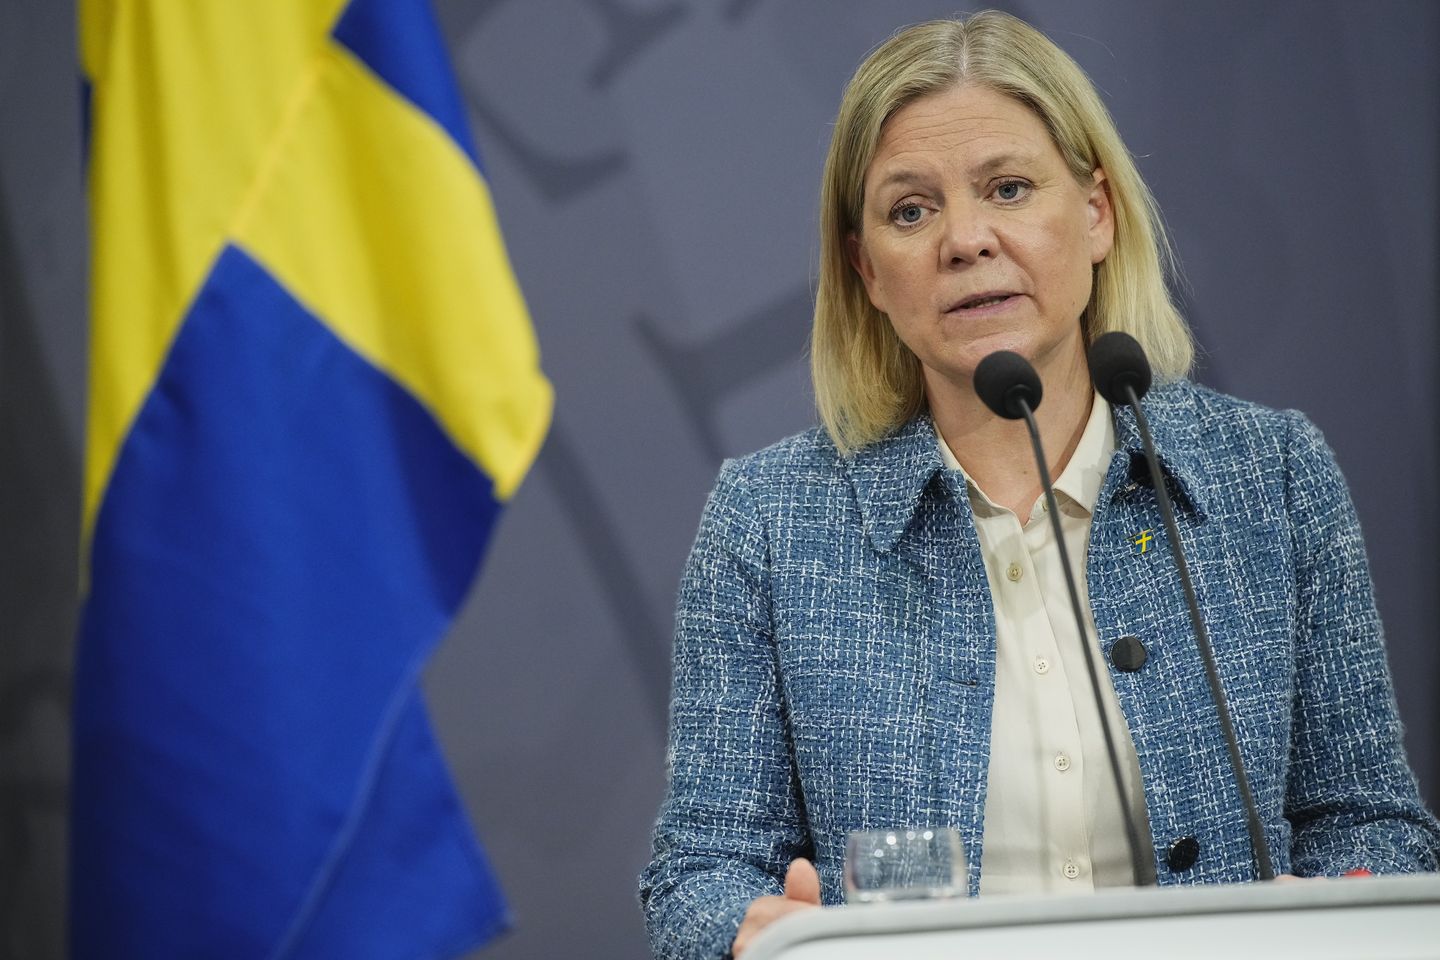 Swedia mengambil langkah besar menuju tawaran untuk NATO